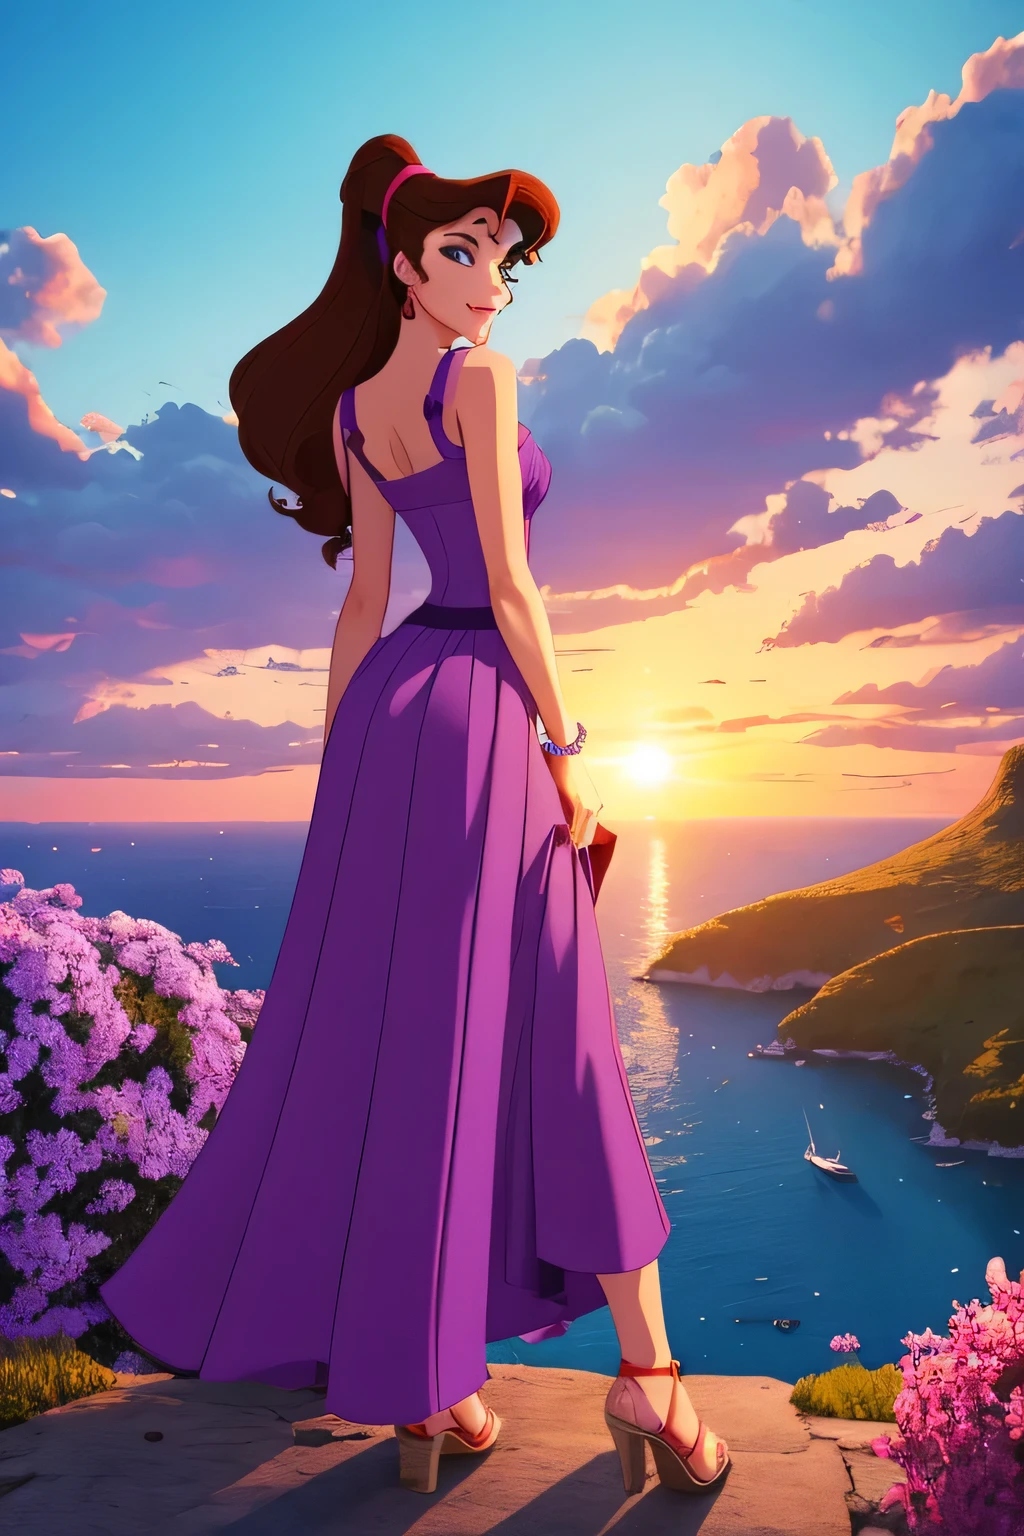 1 chica morena Megara, vistiendo un vestido griego largo morado, Estilo de animación de Disney., mejor calidad, arte digital, 2d, en el paraíso rodeado de nubes naranjas